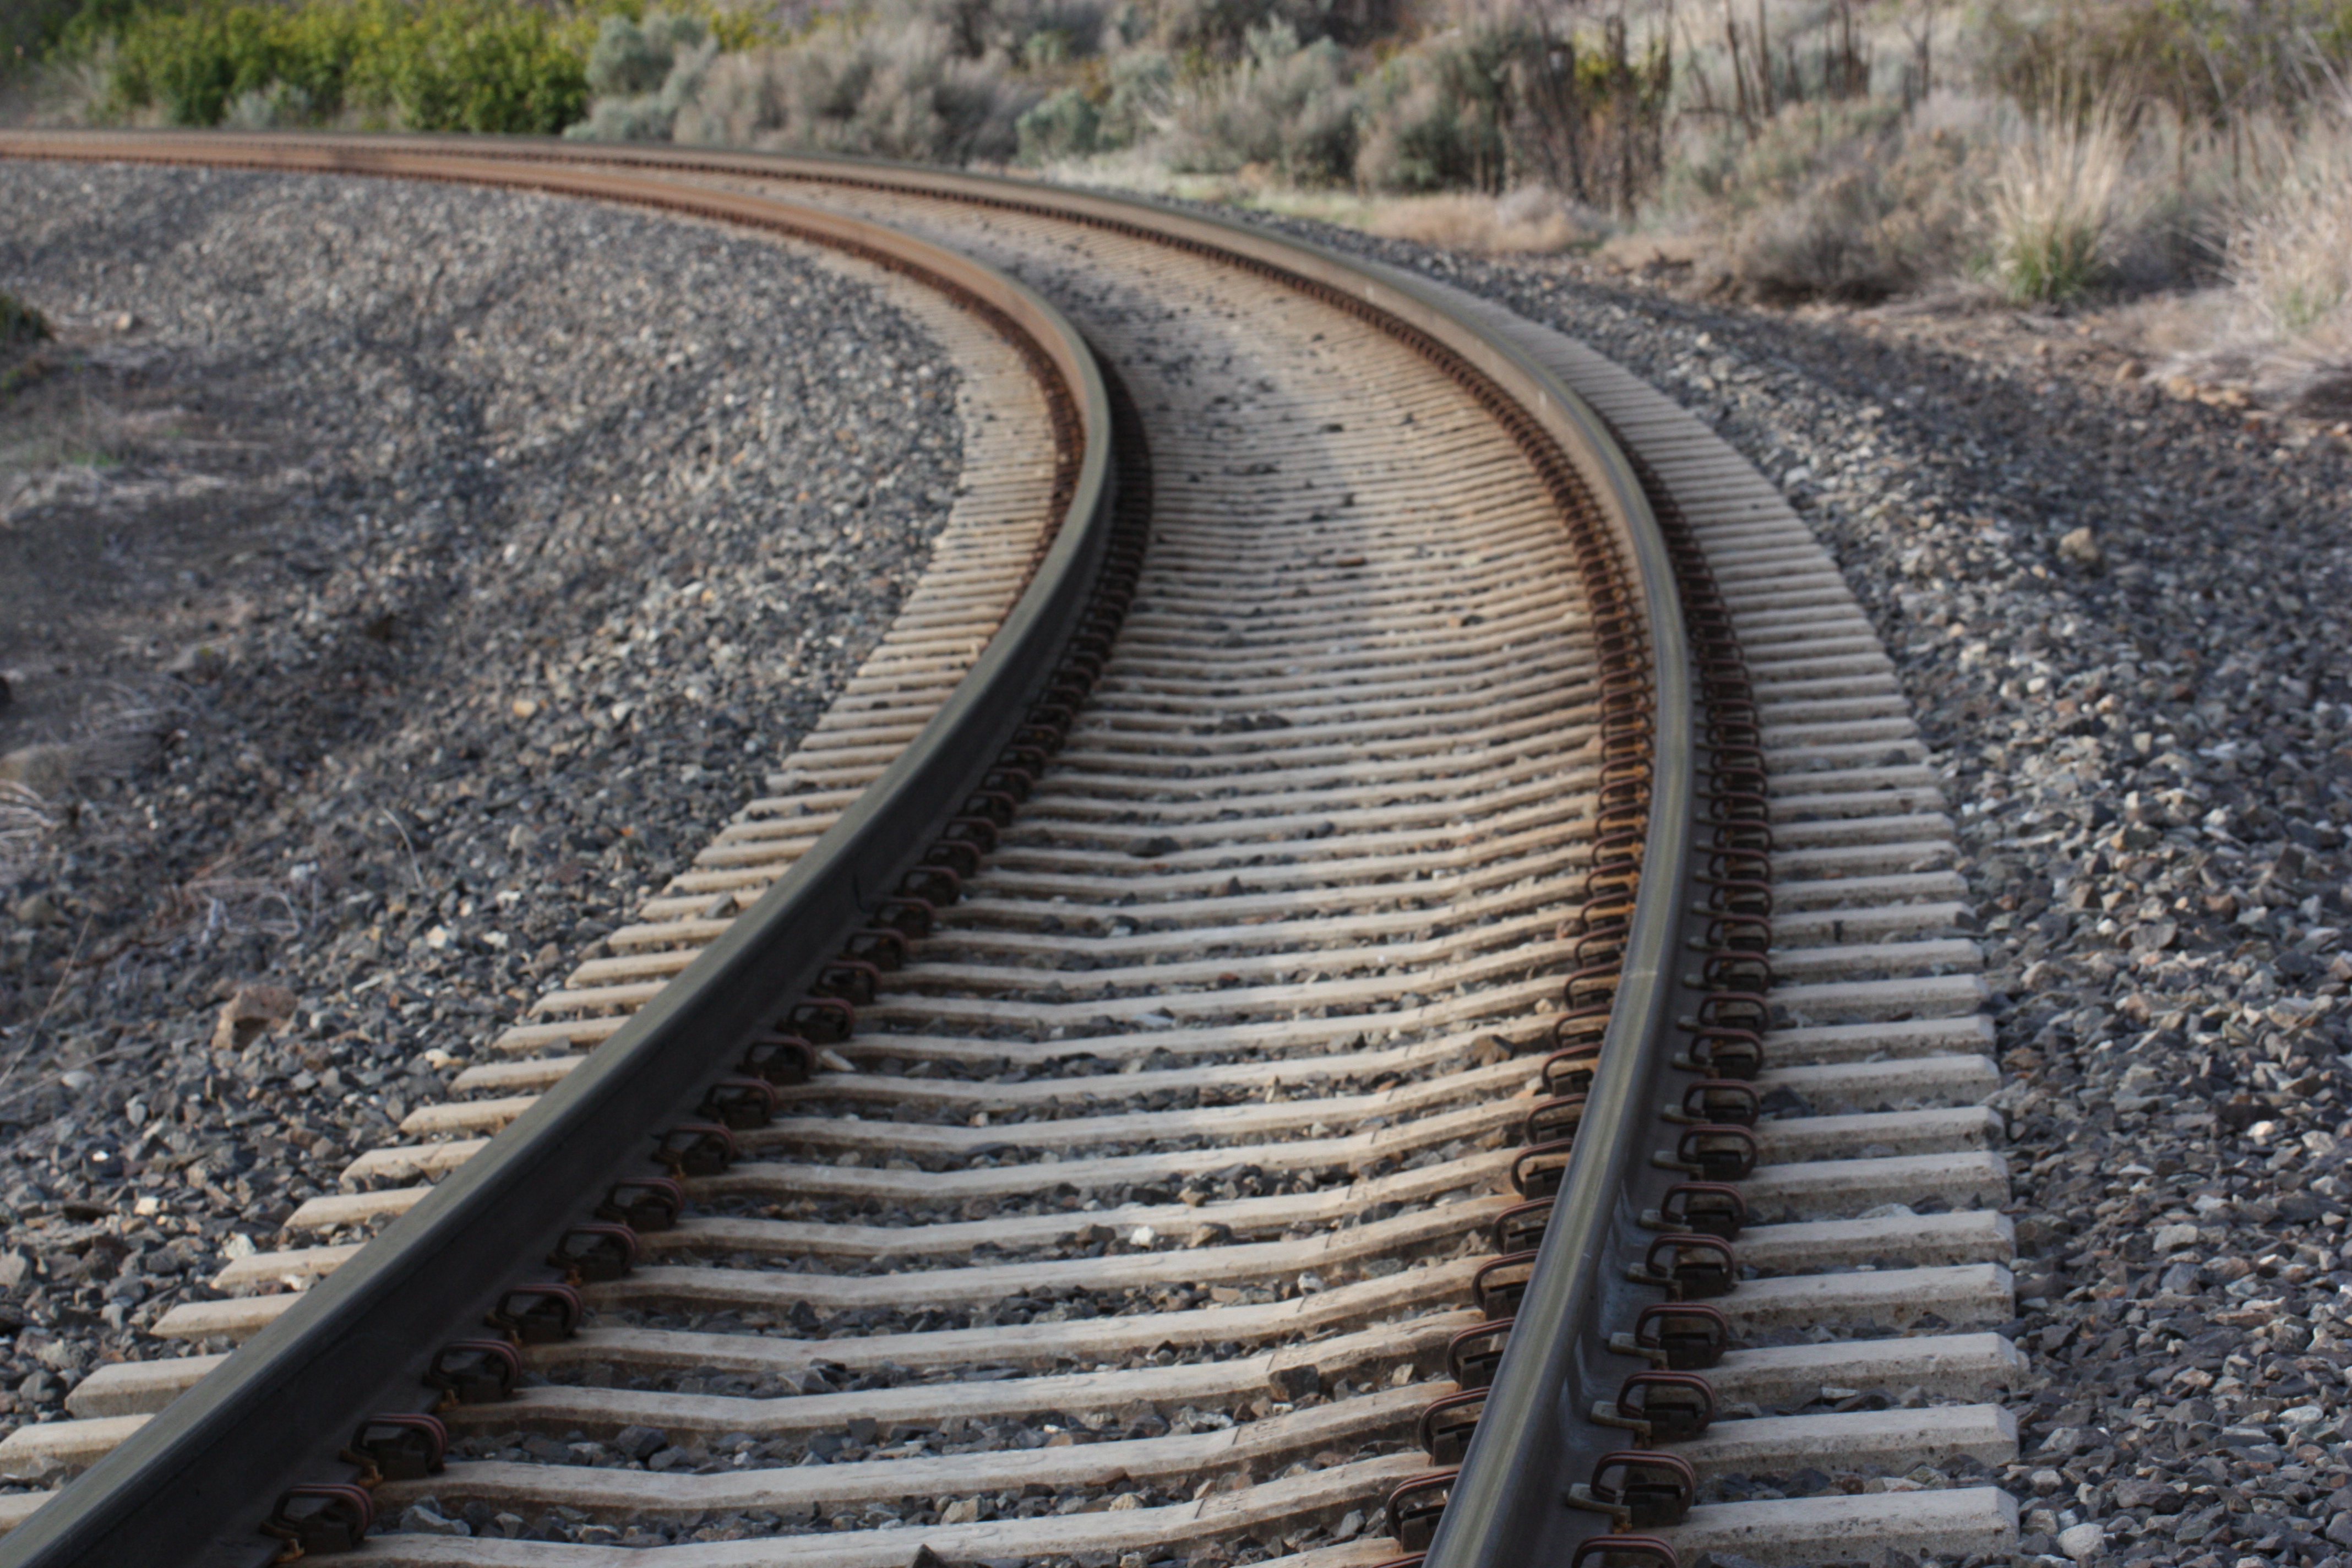 Track geometry – Hot Rails